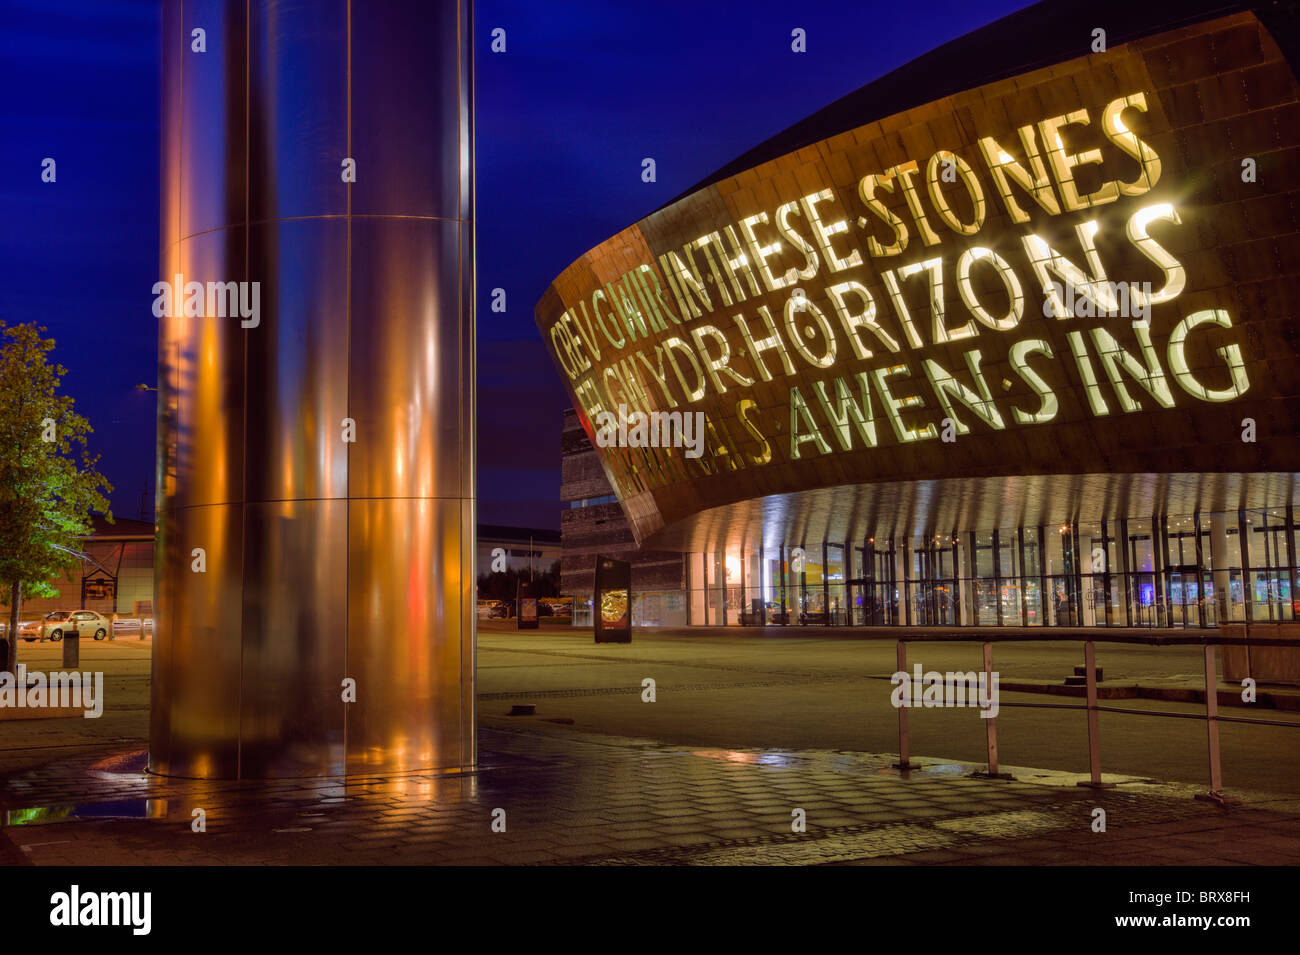 Avant de Cardiff Millennium Centre complexe artistique et tour de l'eau fontaine illuminée la nuit. L'architecture moderne dans la baie de Cardiff, Glamorgan, Pays de Galles, Royaume-Uni. Banque D'Images